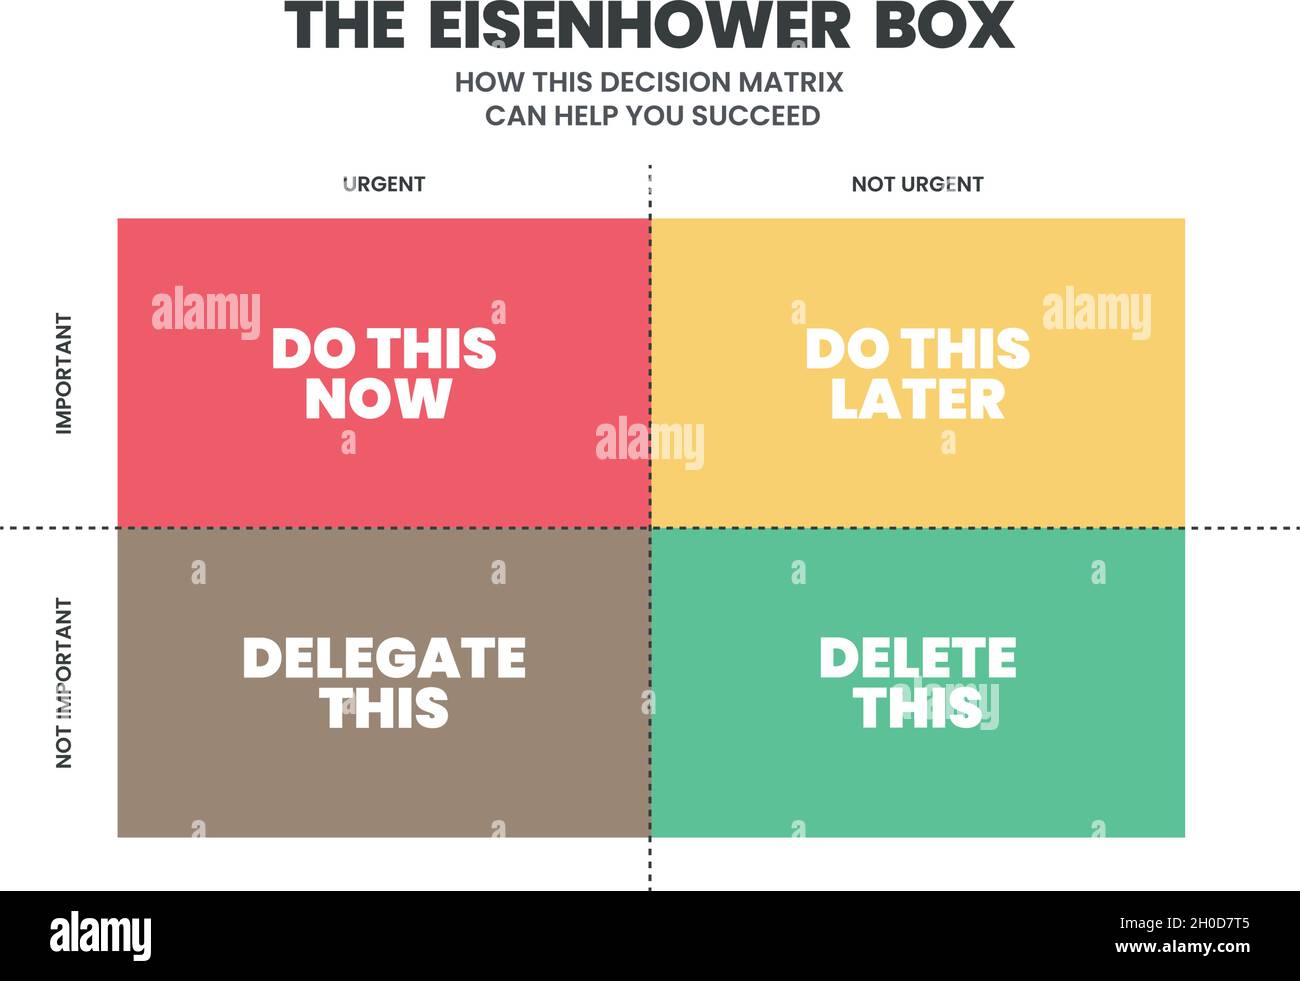 Eisenhower Matrix verfügt über 4 Felder, um die in der Liste zu erfolgenden Aufgaben zu analysieren oder zu priorisieren, zu delegieren, zu löschen oder später zu erledigen. Illustrationsvektor. Stock Vektor